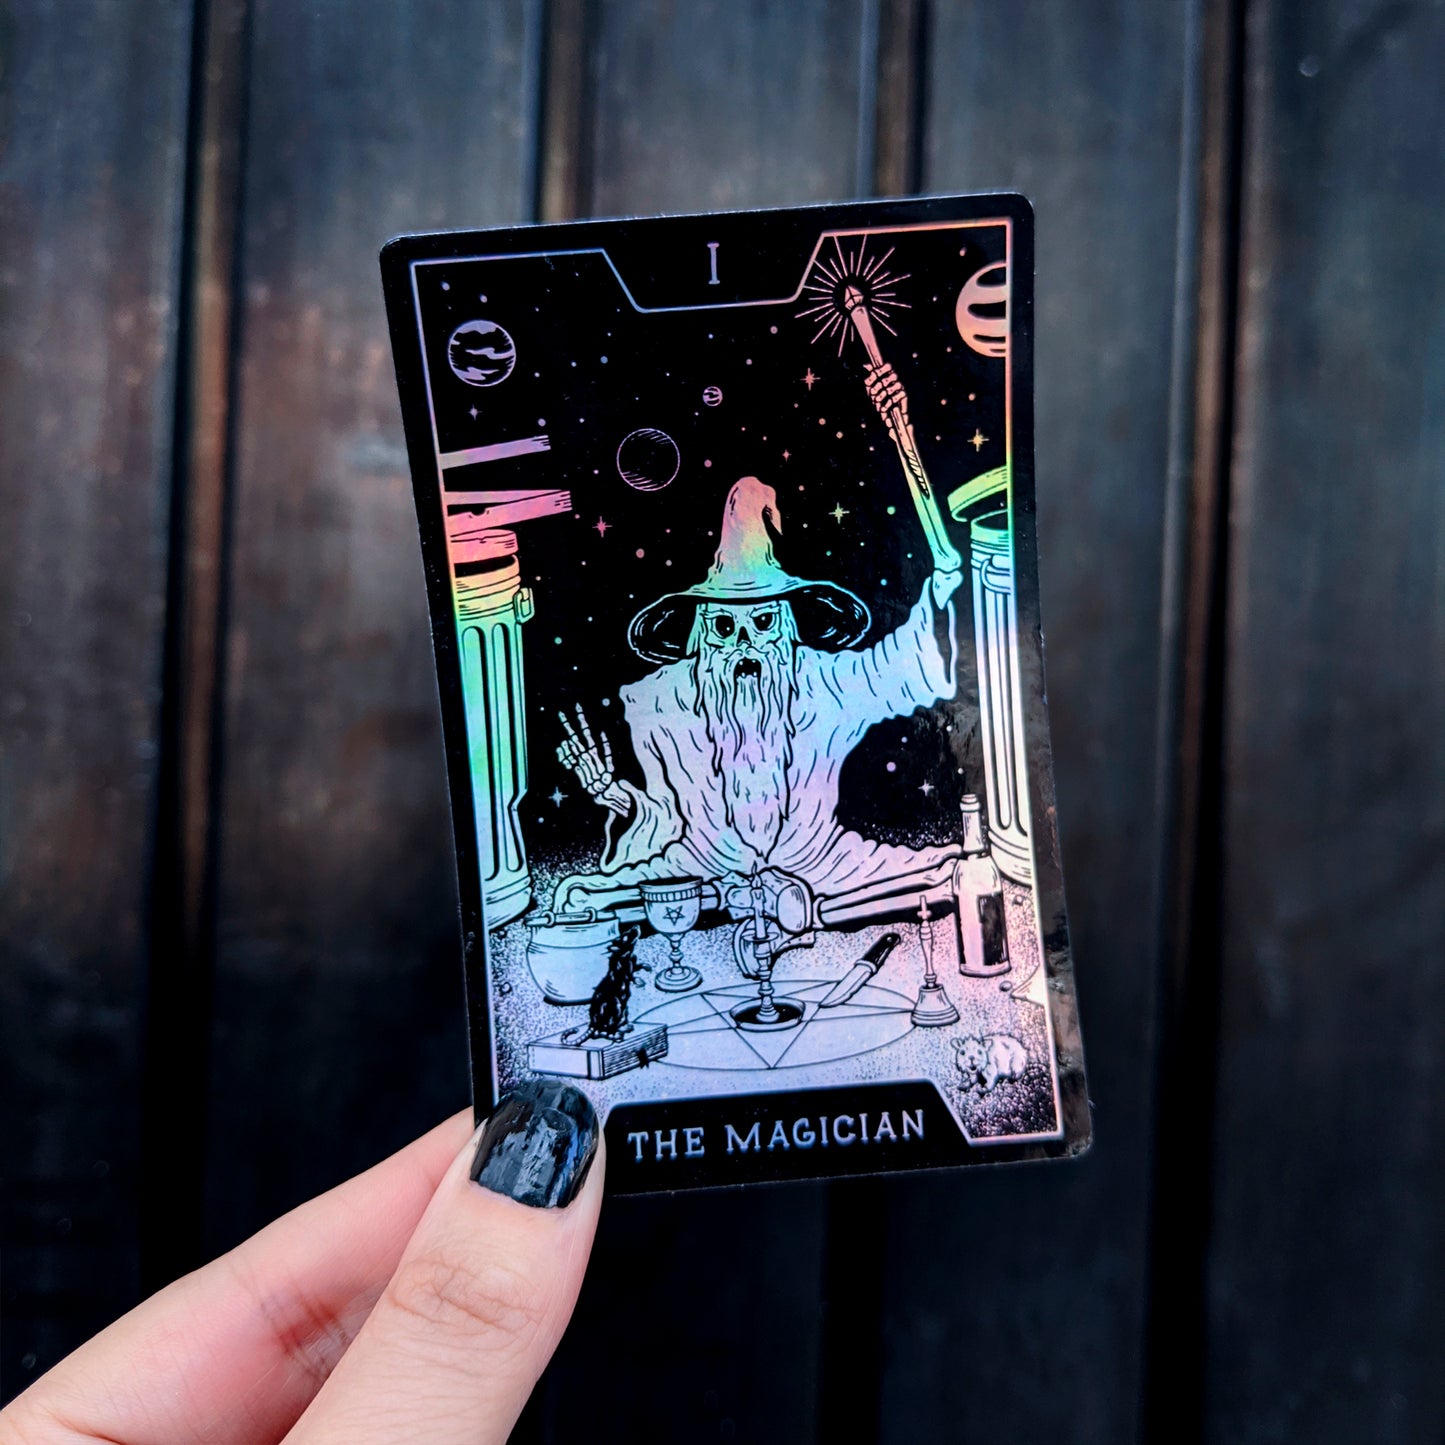 Sticker "I The Magician" por Wytch Lab - Hipnosis